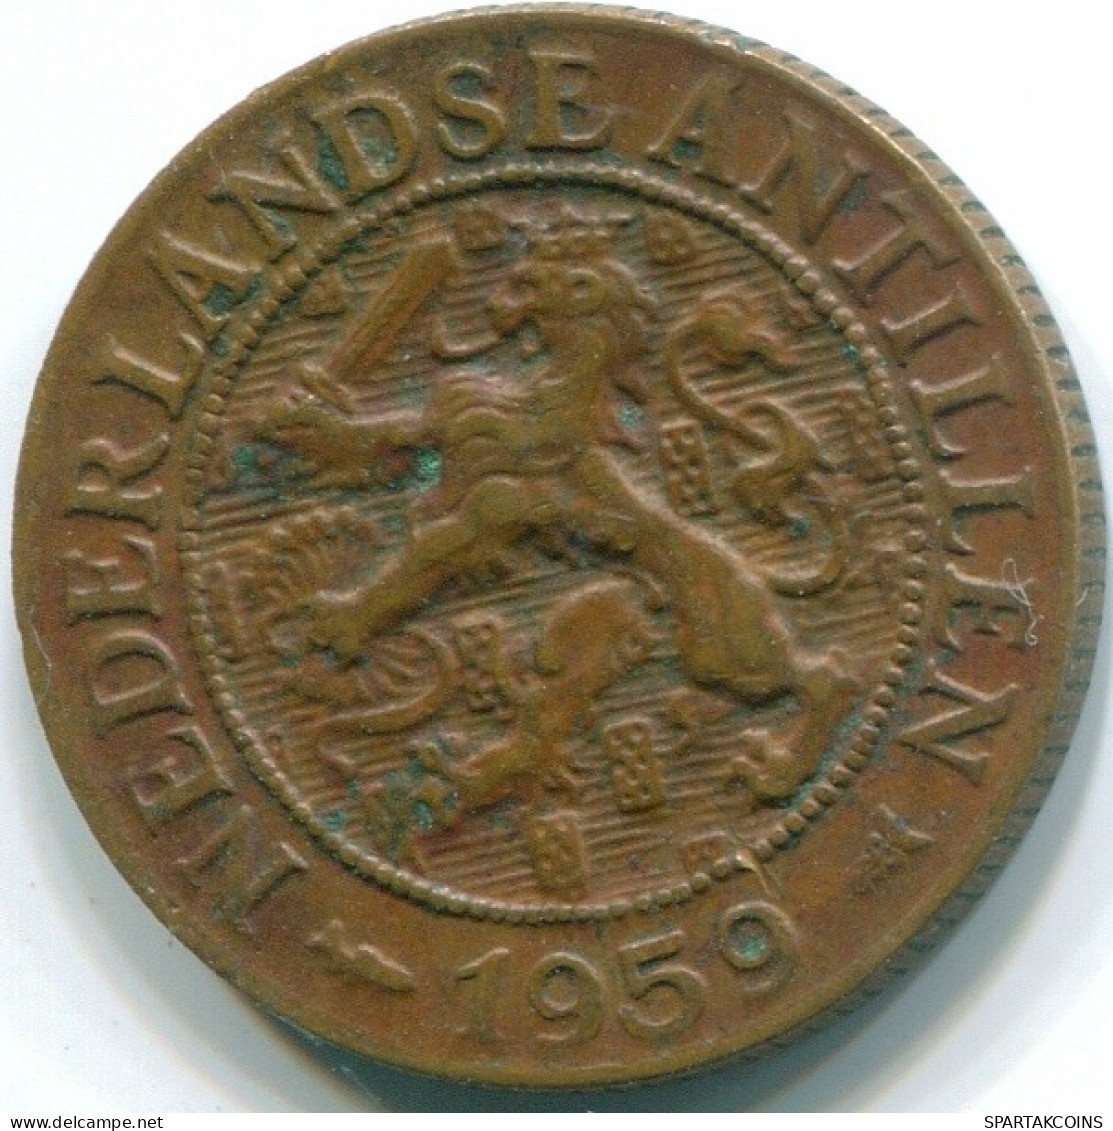 1 CENT 1959 NIEDERLÄNDISCHE ANTILLEN Bronze Fish Koloniale Münze #S11045.D.A - Niederländische Antillen